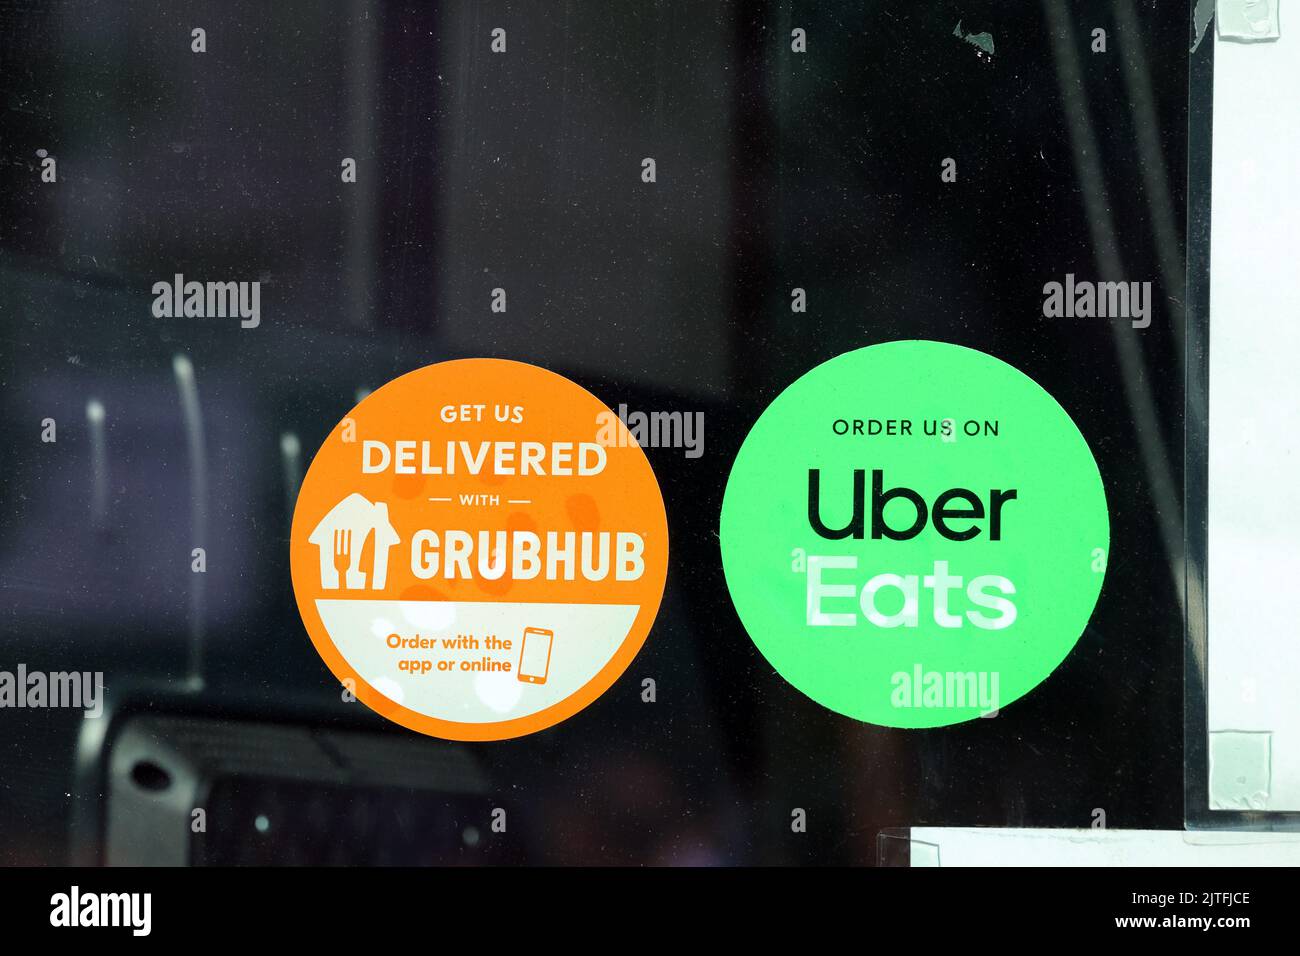 Des autocollants d'application Grubhub et Uber Eats pour les services de livraison de nourriture sont apposés sur une fenêtre d'un restaurant. Banque D'Images